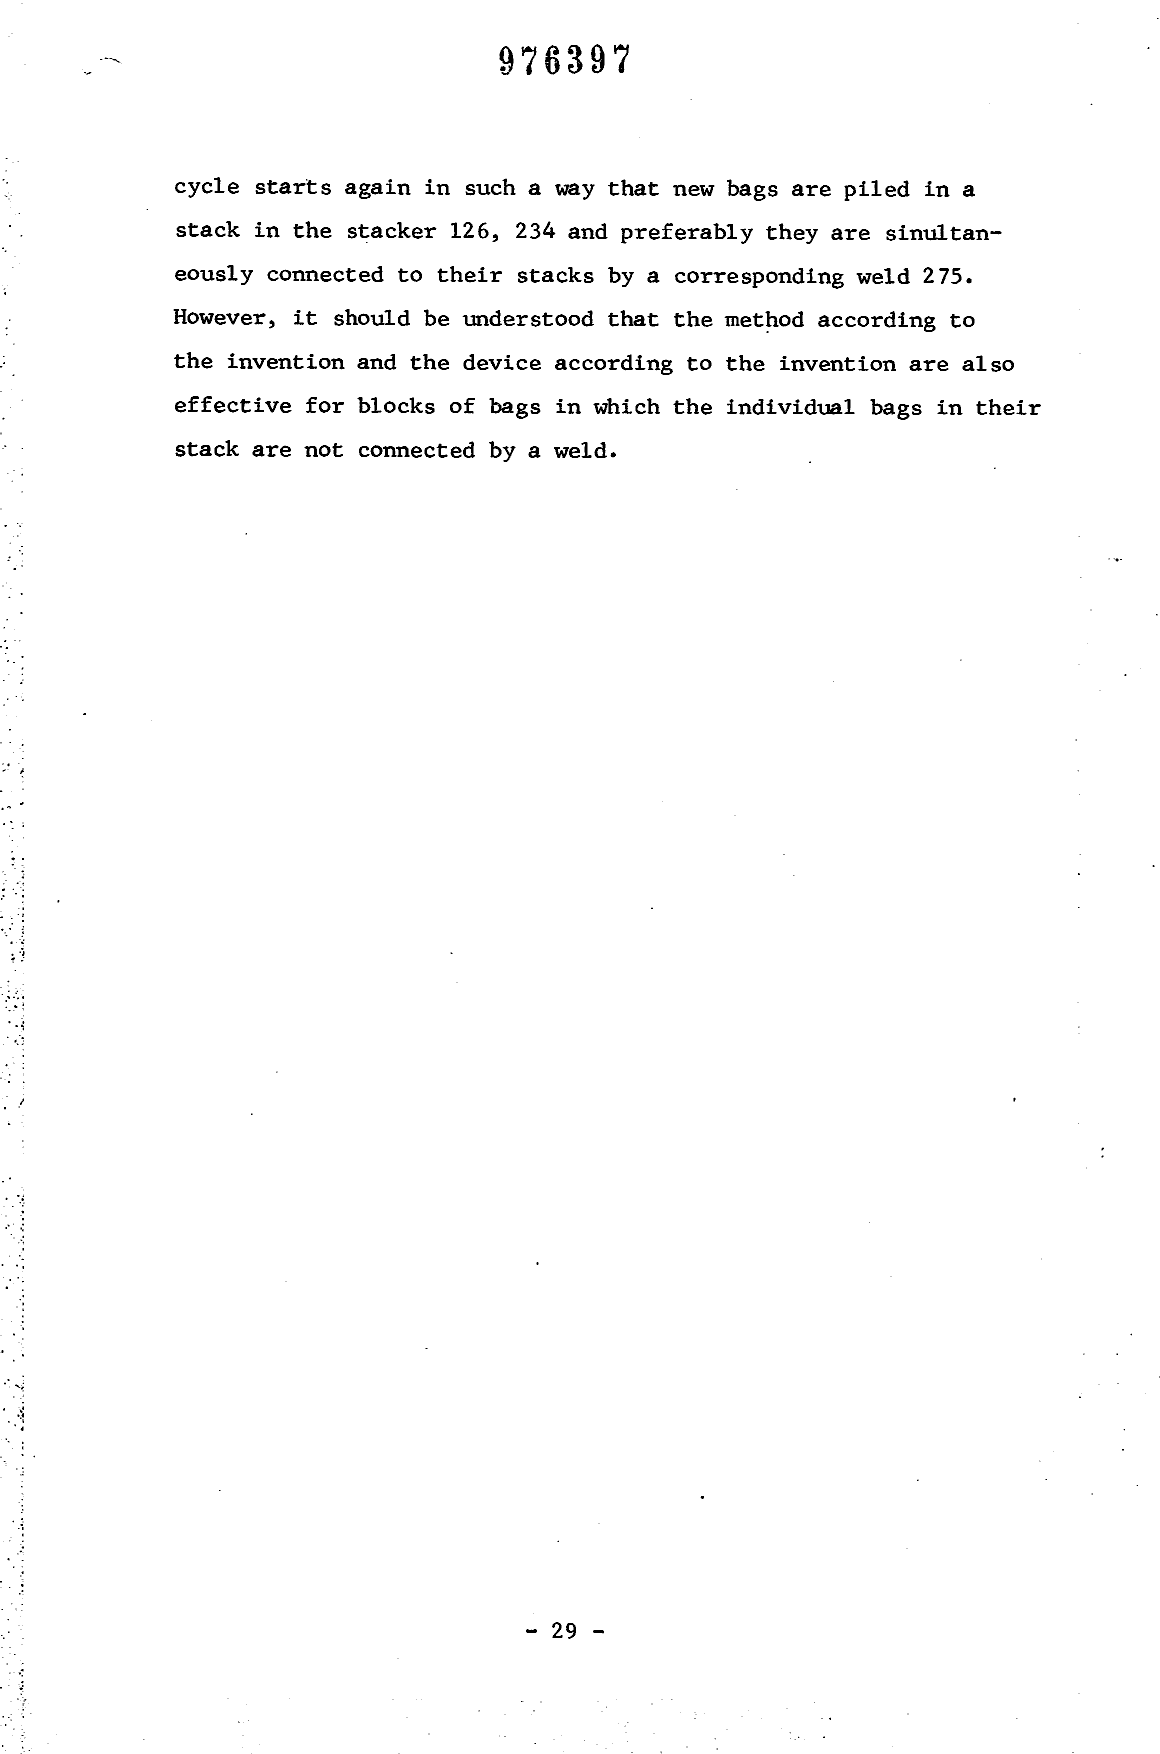 Canadian Patent Document 976397. Description 19931208. Image 29 of 29